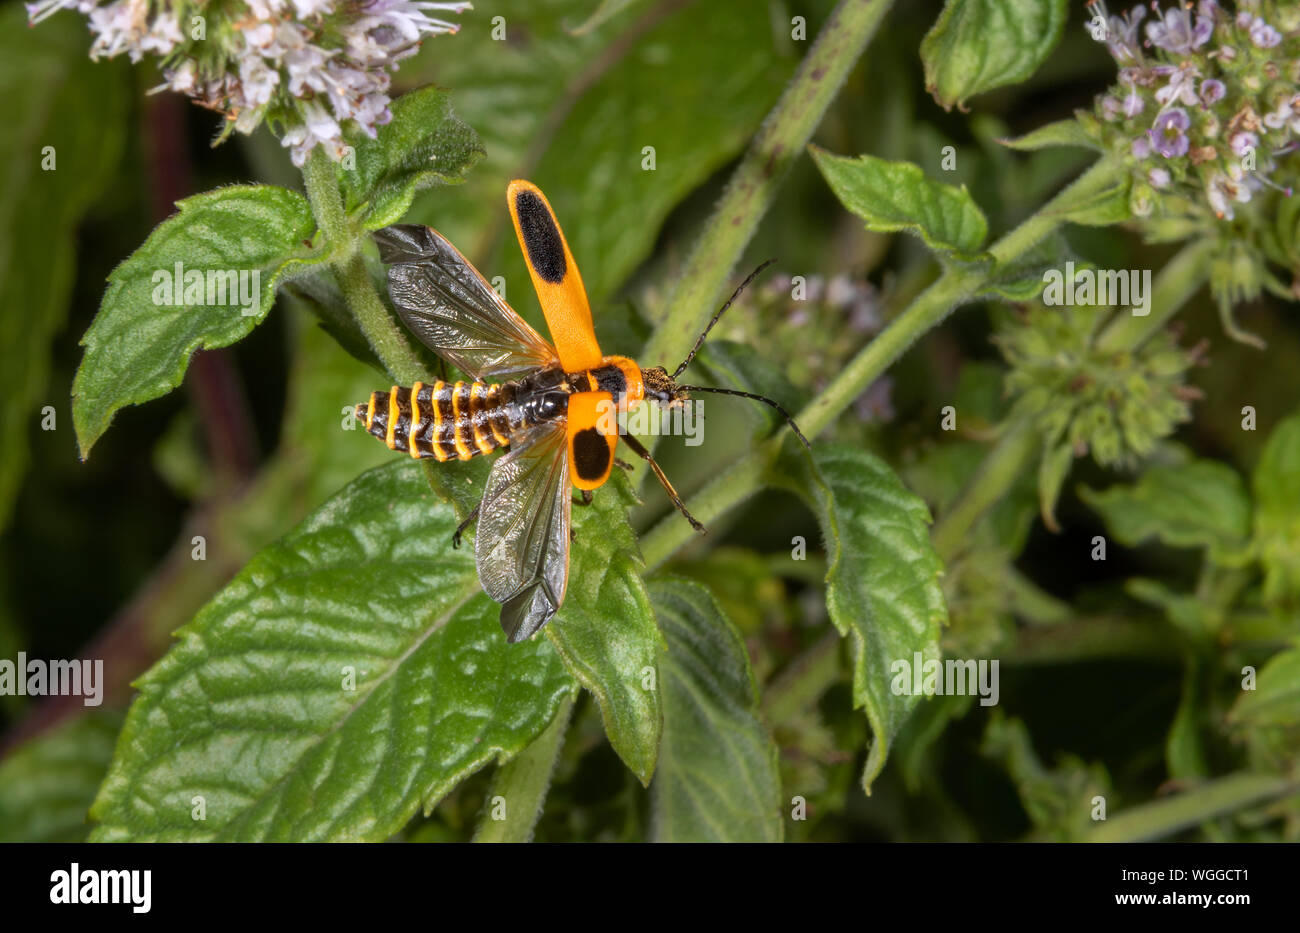 Houghton (Chauliognathus pennsylvanicus Soldat Beetle) décollant d'une fleur de menthe, Iowa, États-Unis. Banque D'Images